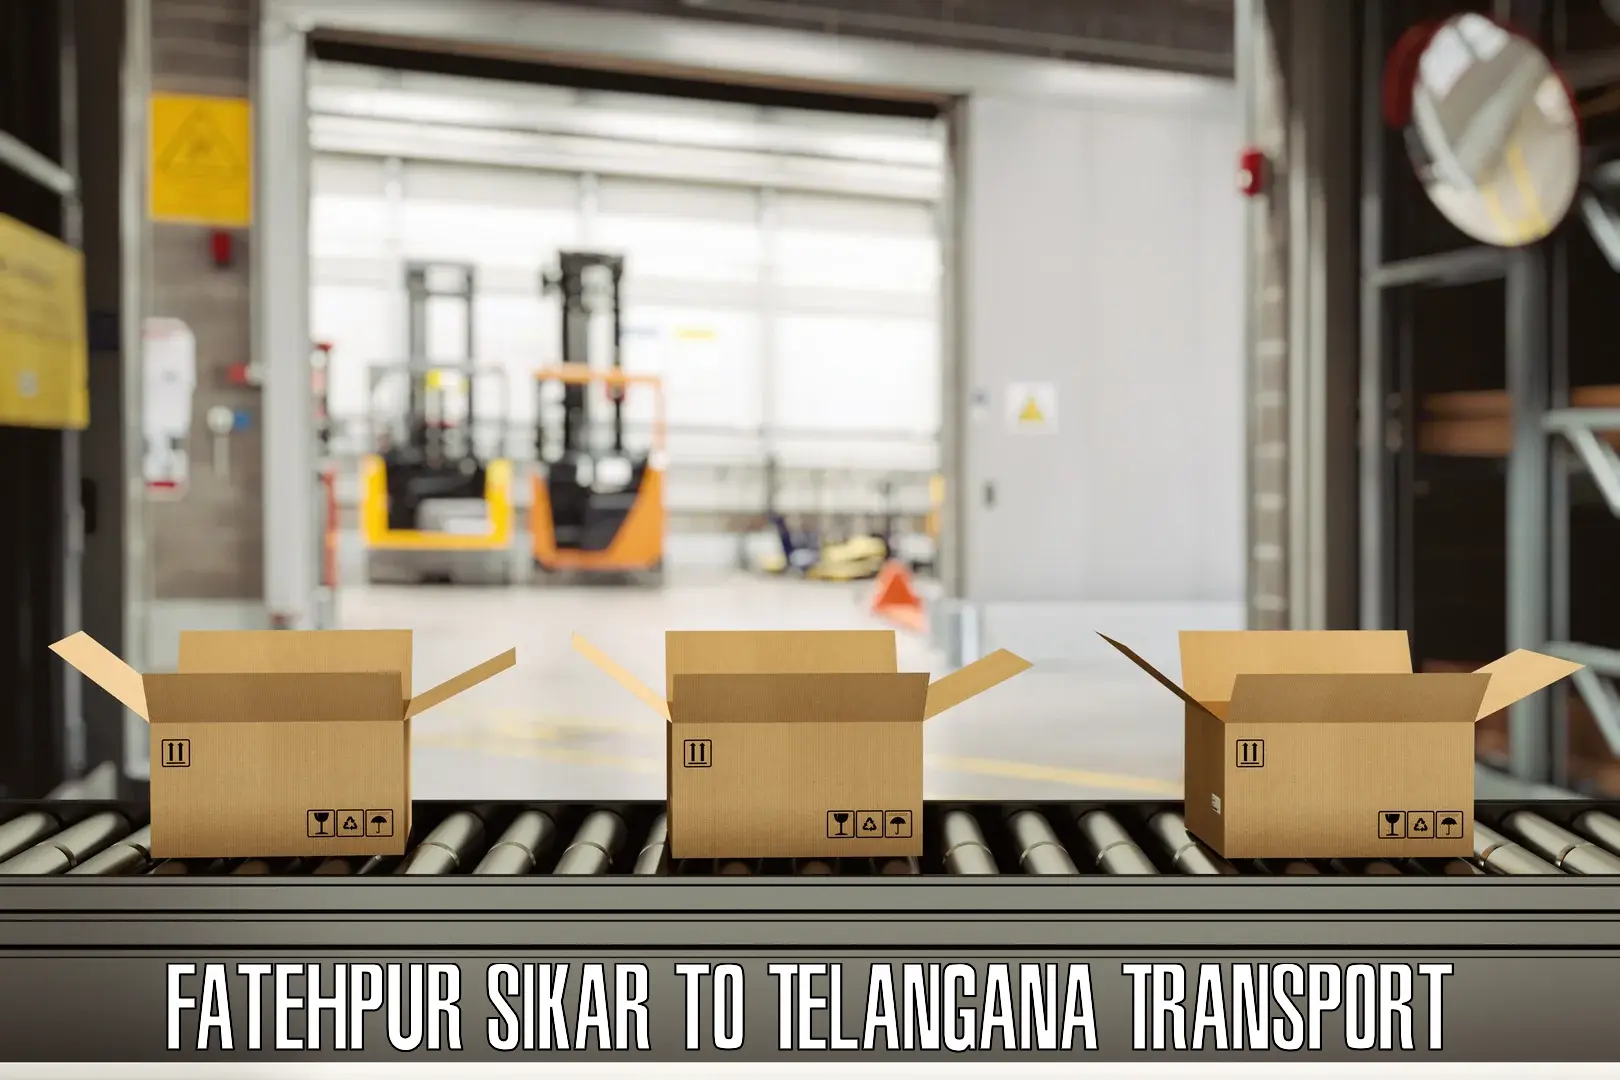 Transport services Fatehpur Sikar to Tandur